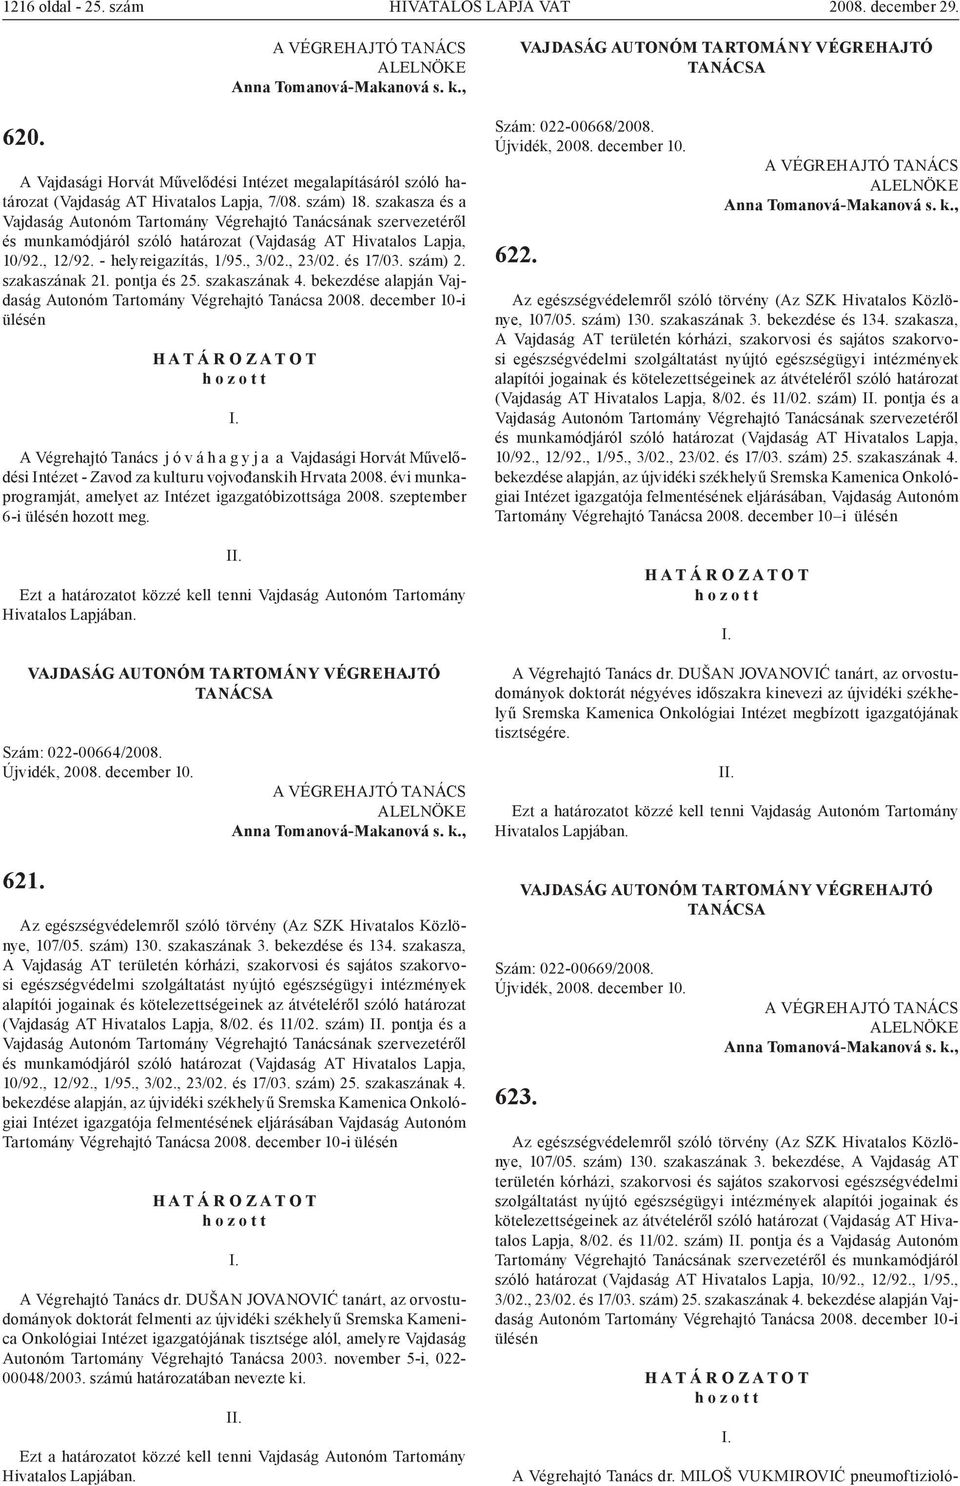 bekezdése alapján Vajdaság Autonóm Tartomány Végrehajtó 2008.